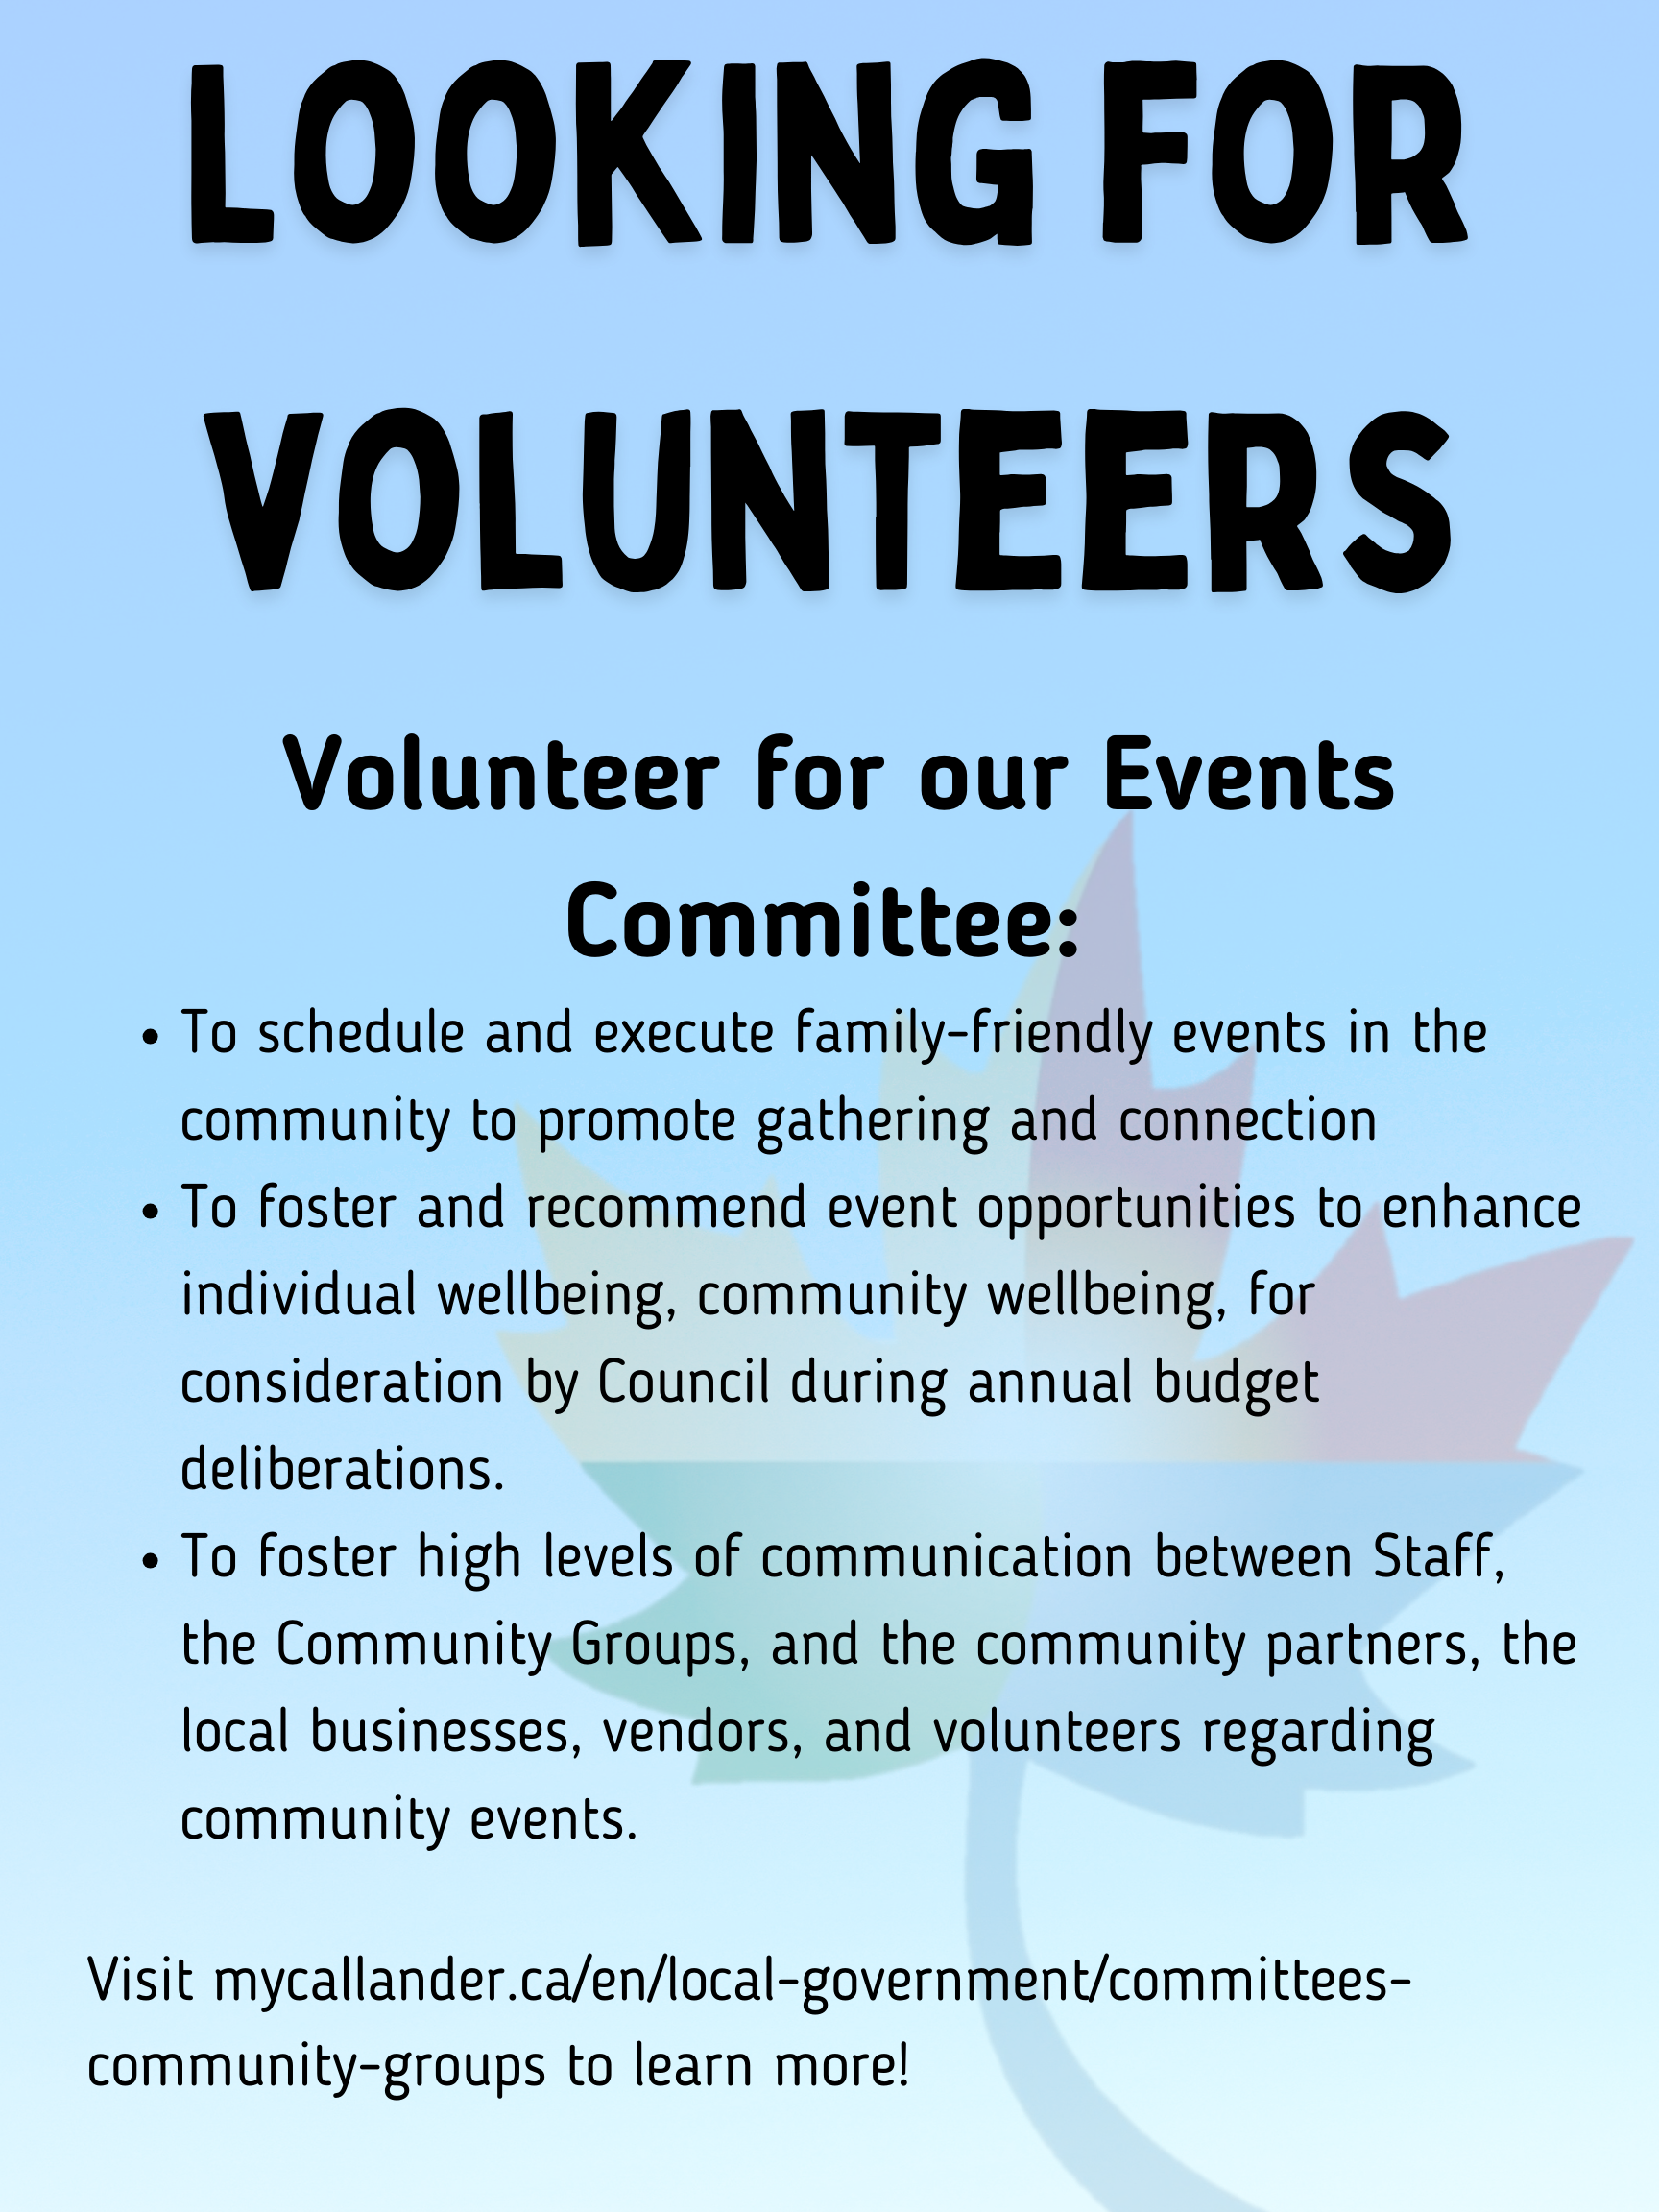 Events Committee Seeking Volunteers!